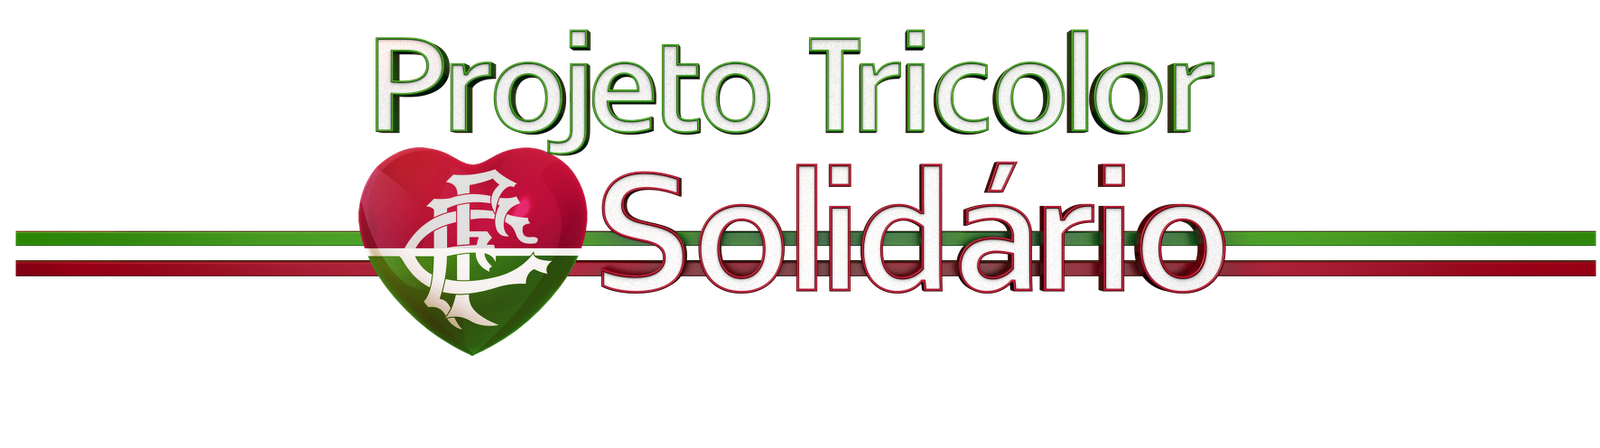 Projeto Tricolor Solidário